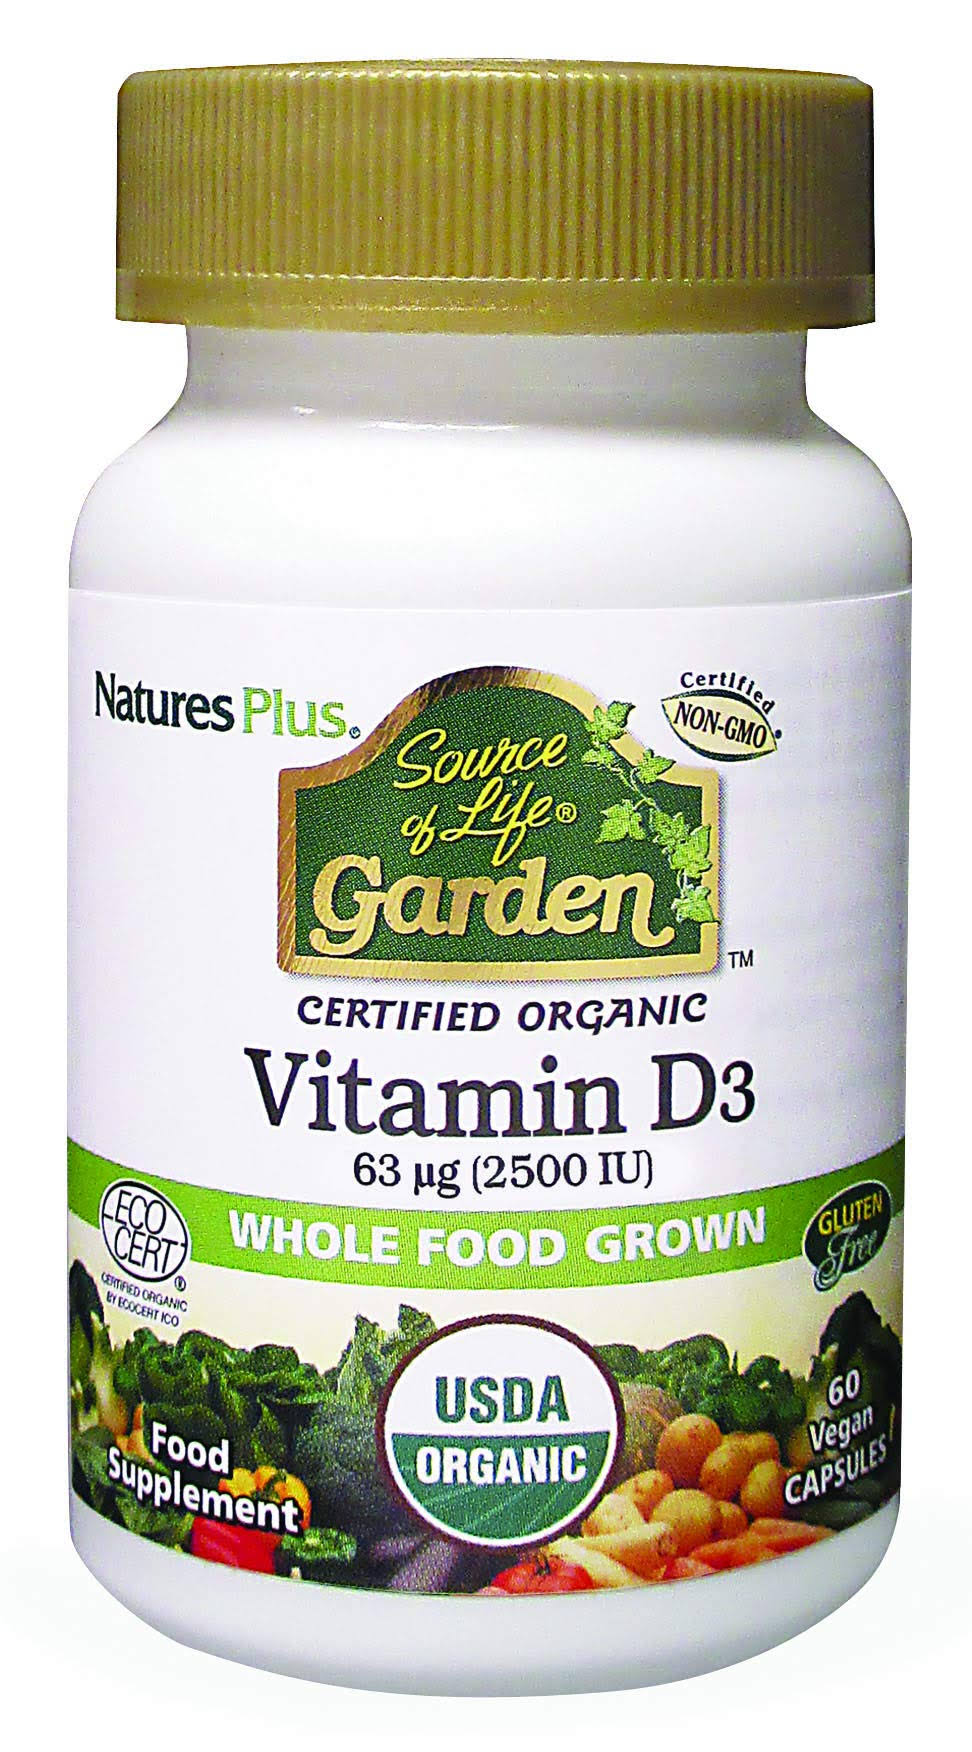 Natures Plus Source of Life Garden Vitamin D3 Capsules 60 Capsules